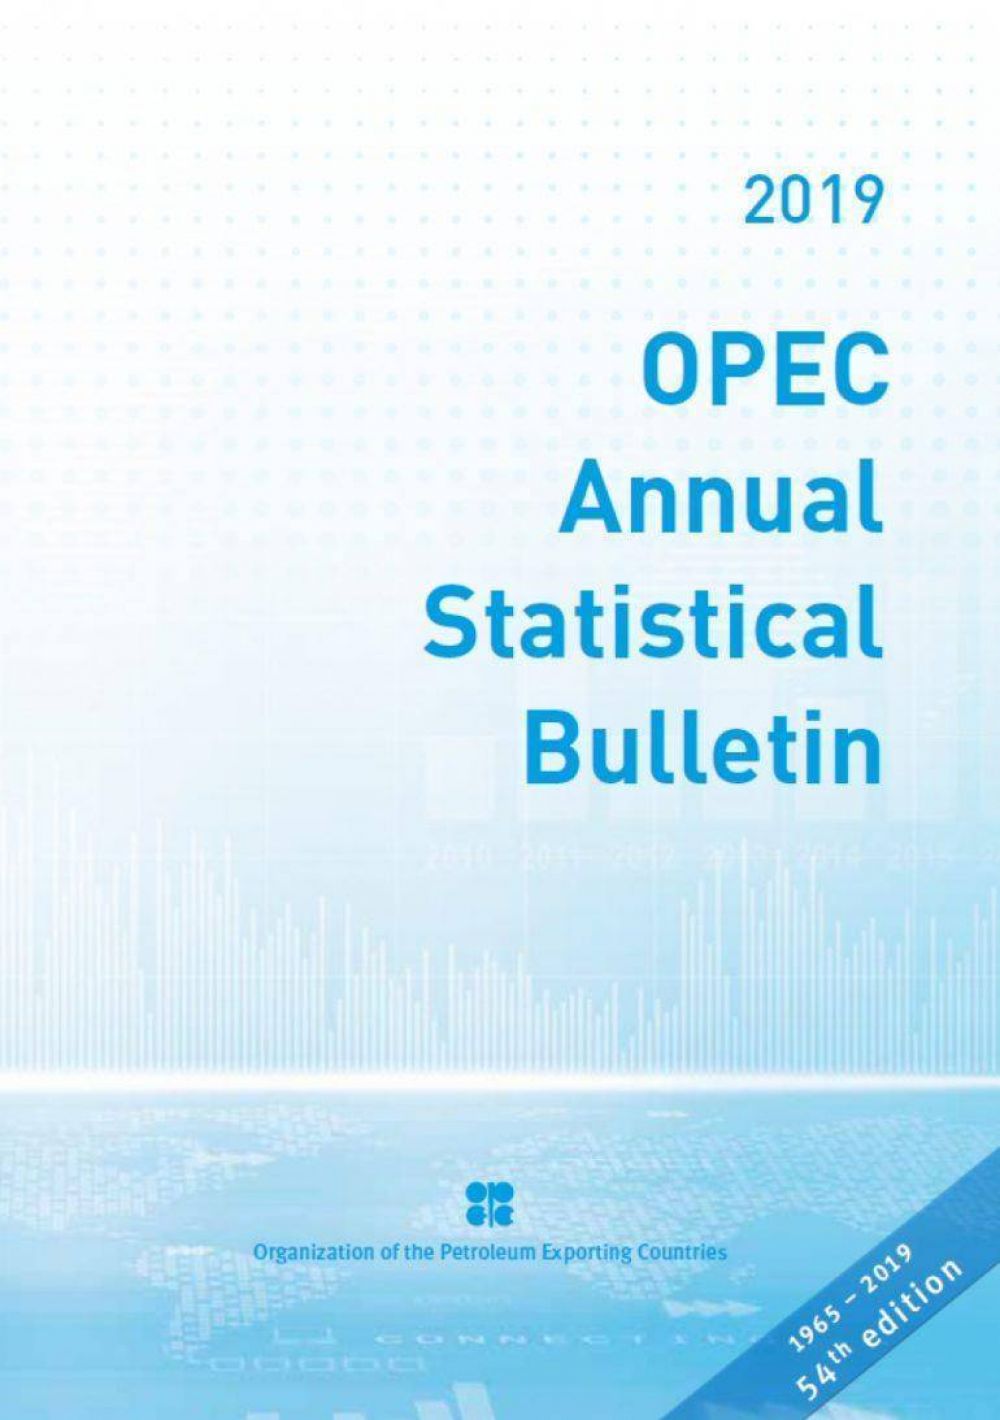 La OPEP present el boletn Estadstico Anual de 2019